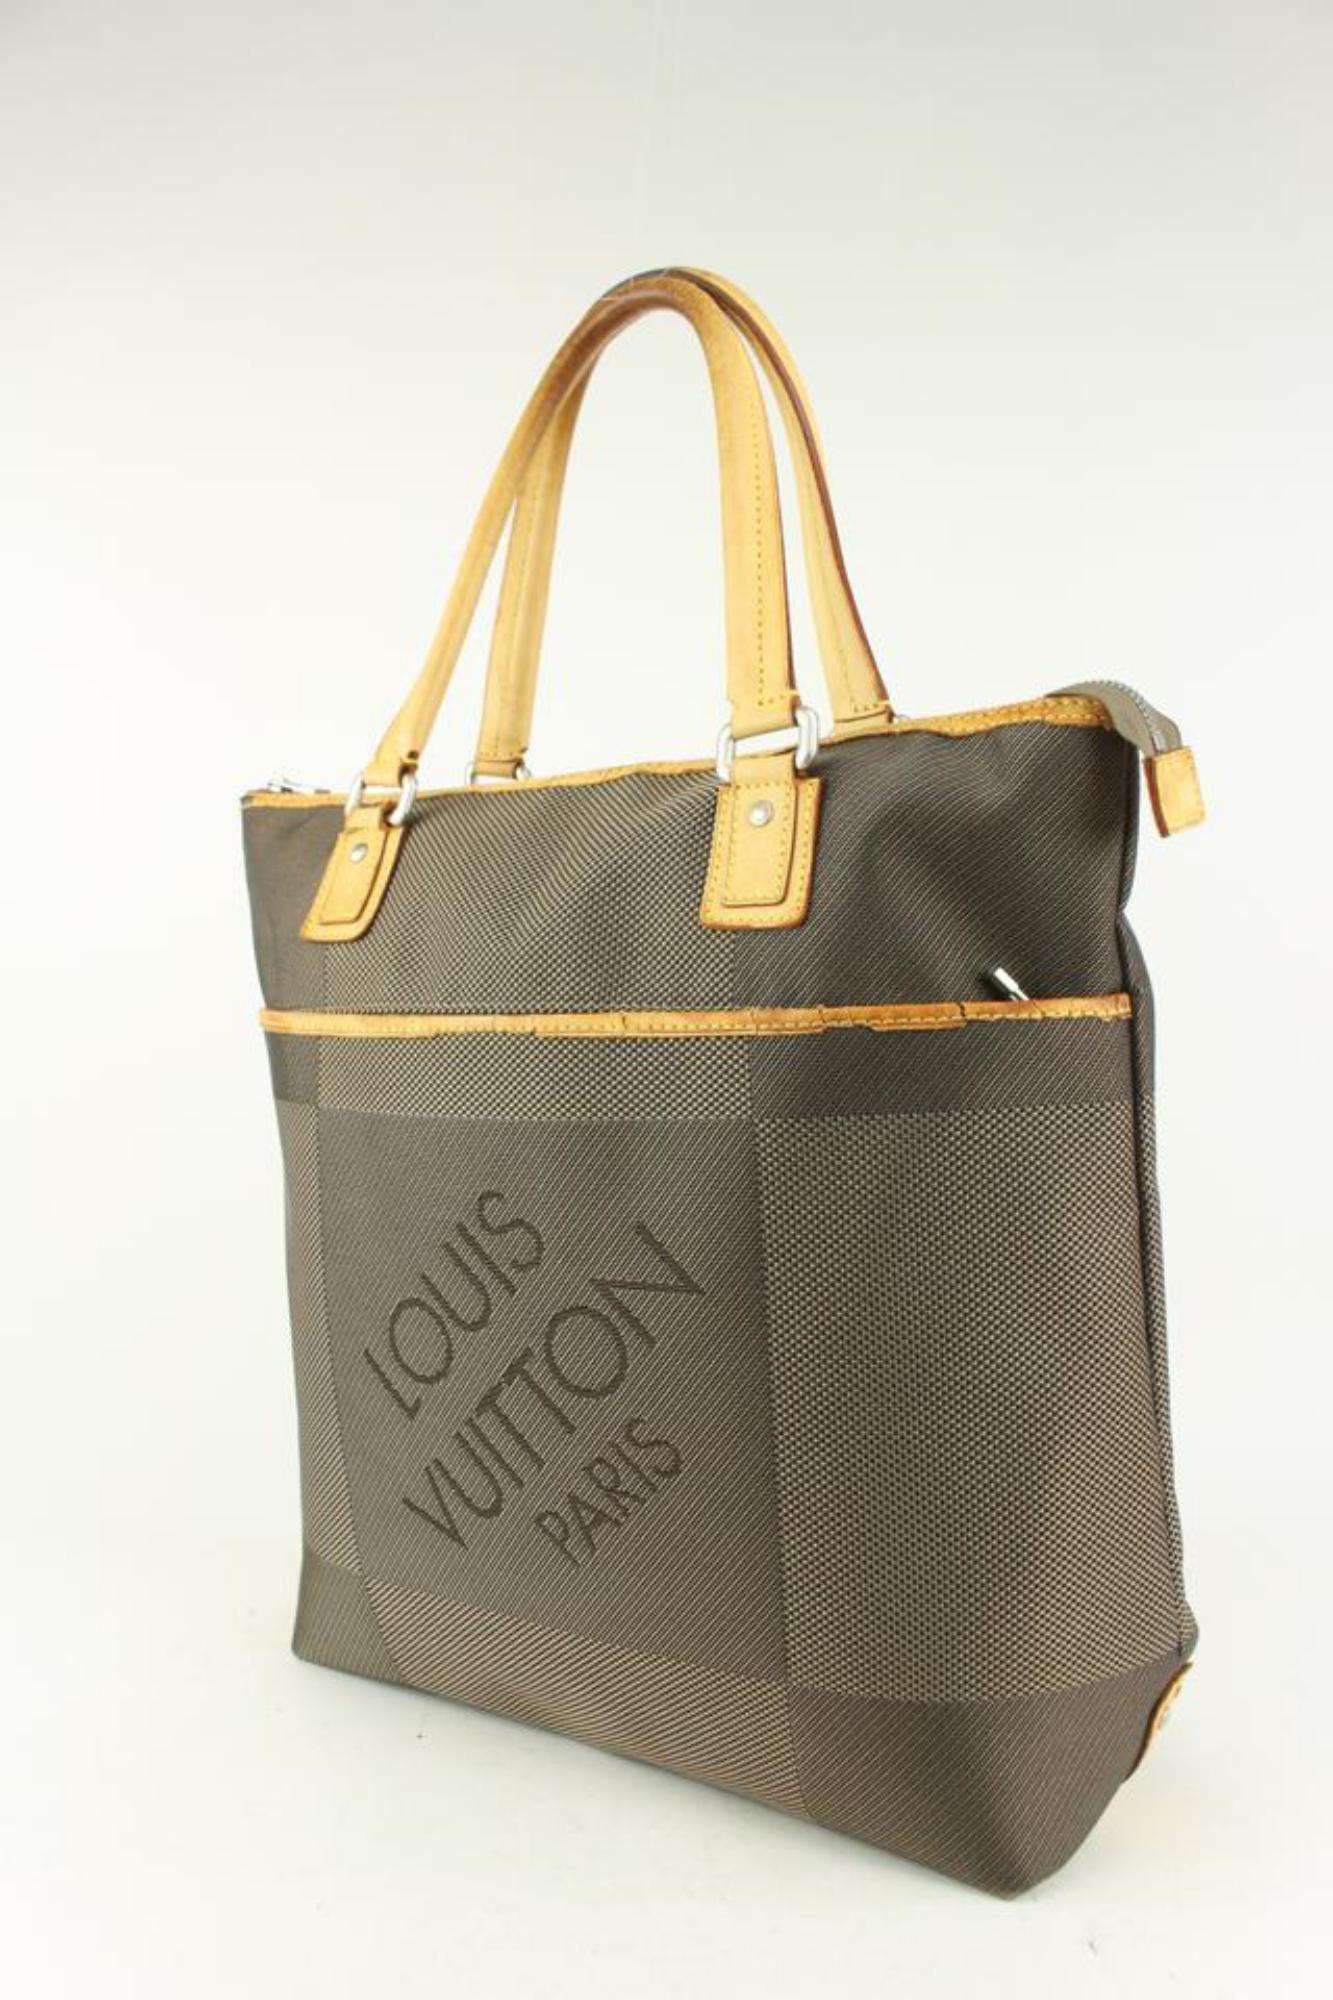 Louis Vuitton Damier Geant Cougar Tote bag 1028lv16 For Sale 6